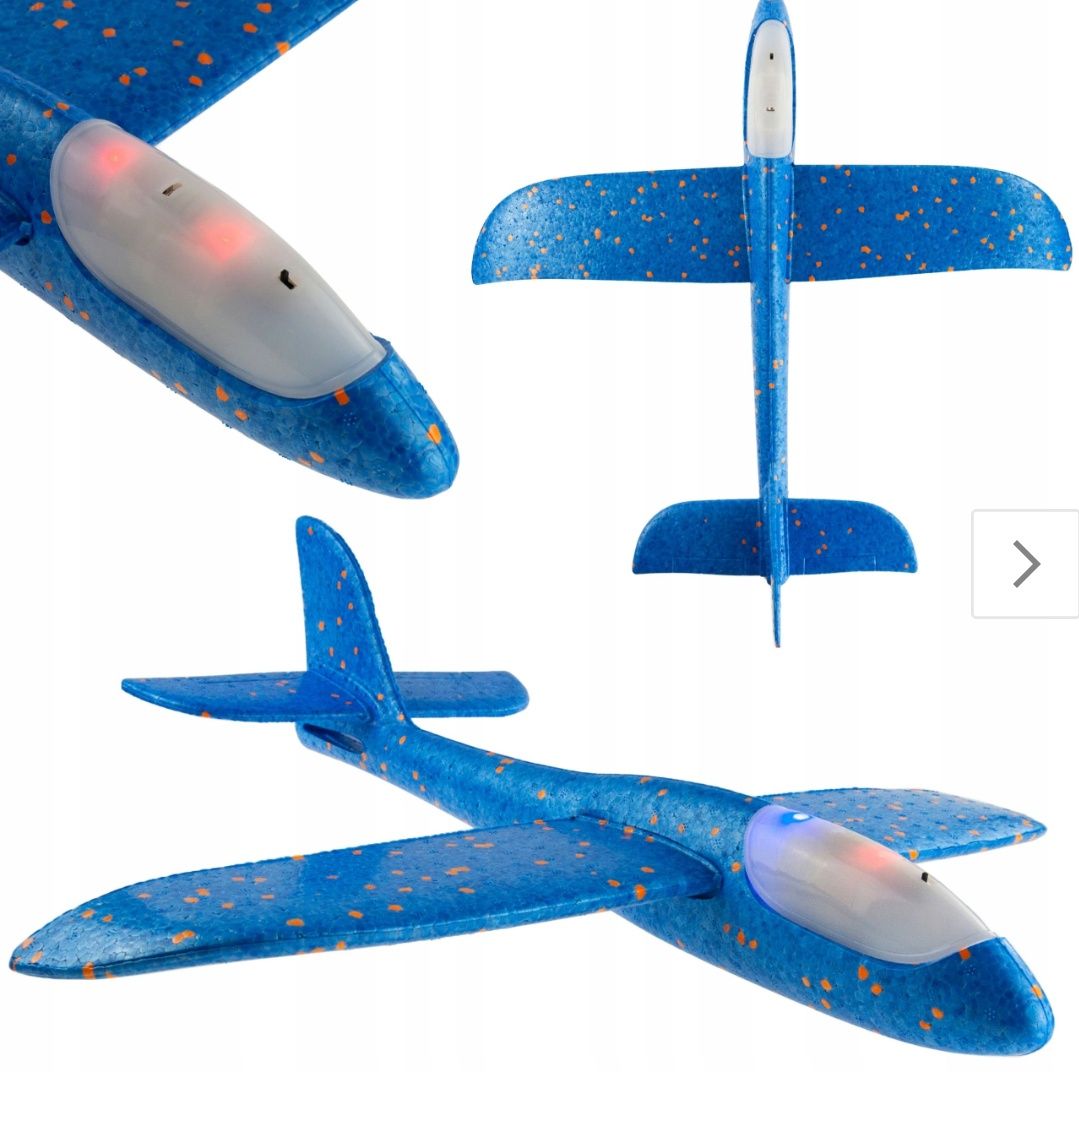 Samolot styropianowy szybowiec duży 46cm RZUTKA led świecący new